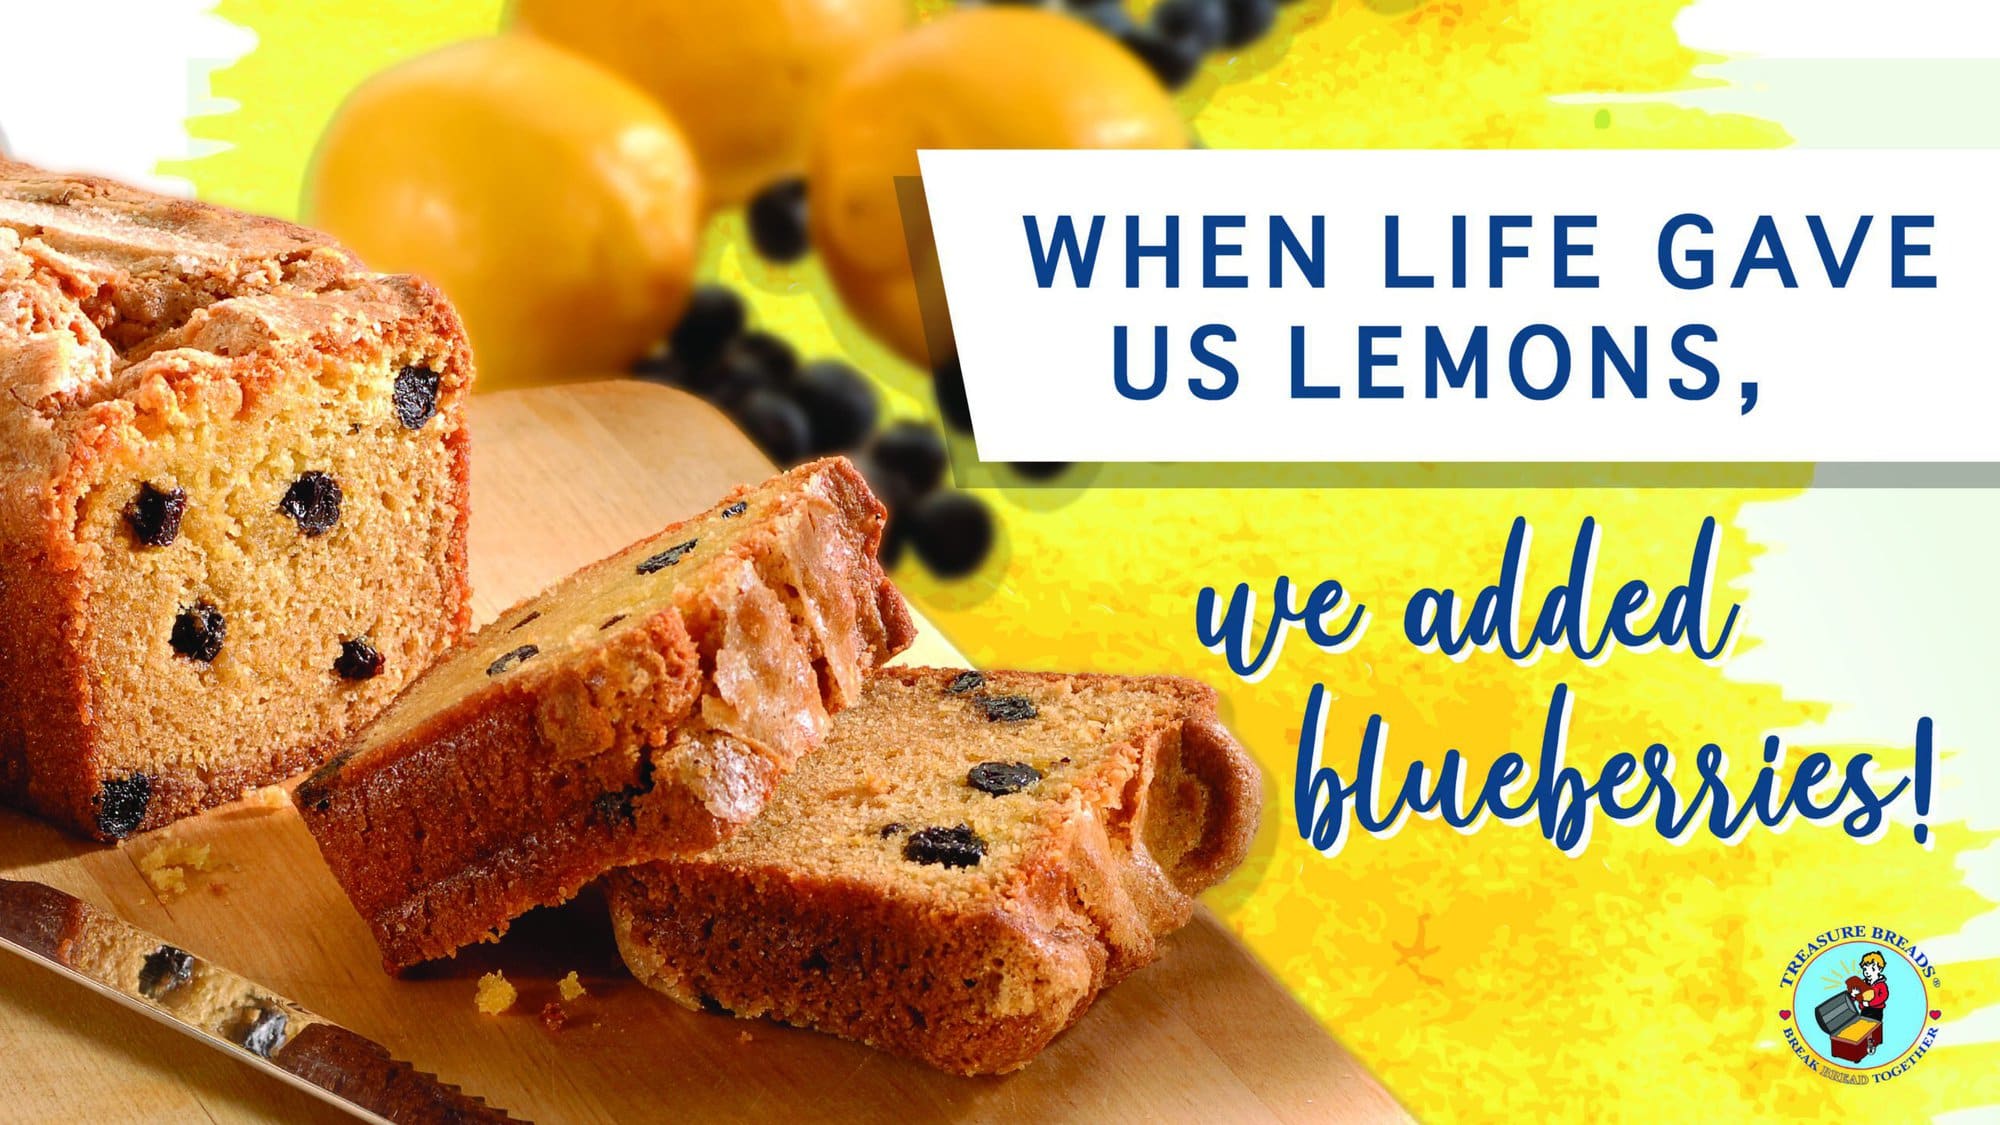 When life gave us lemons, we added blueberries!